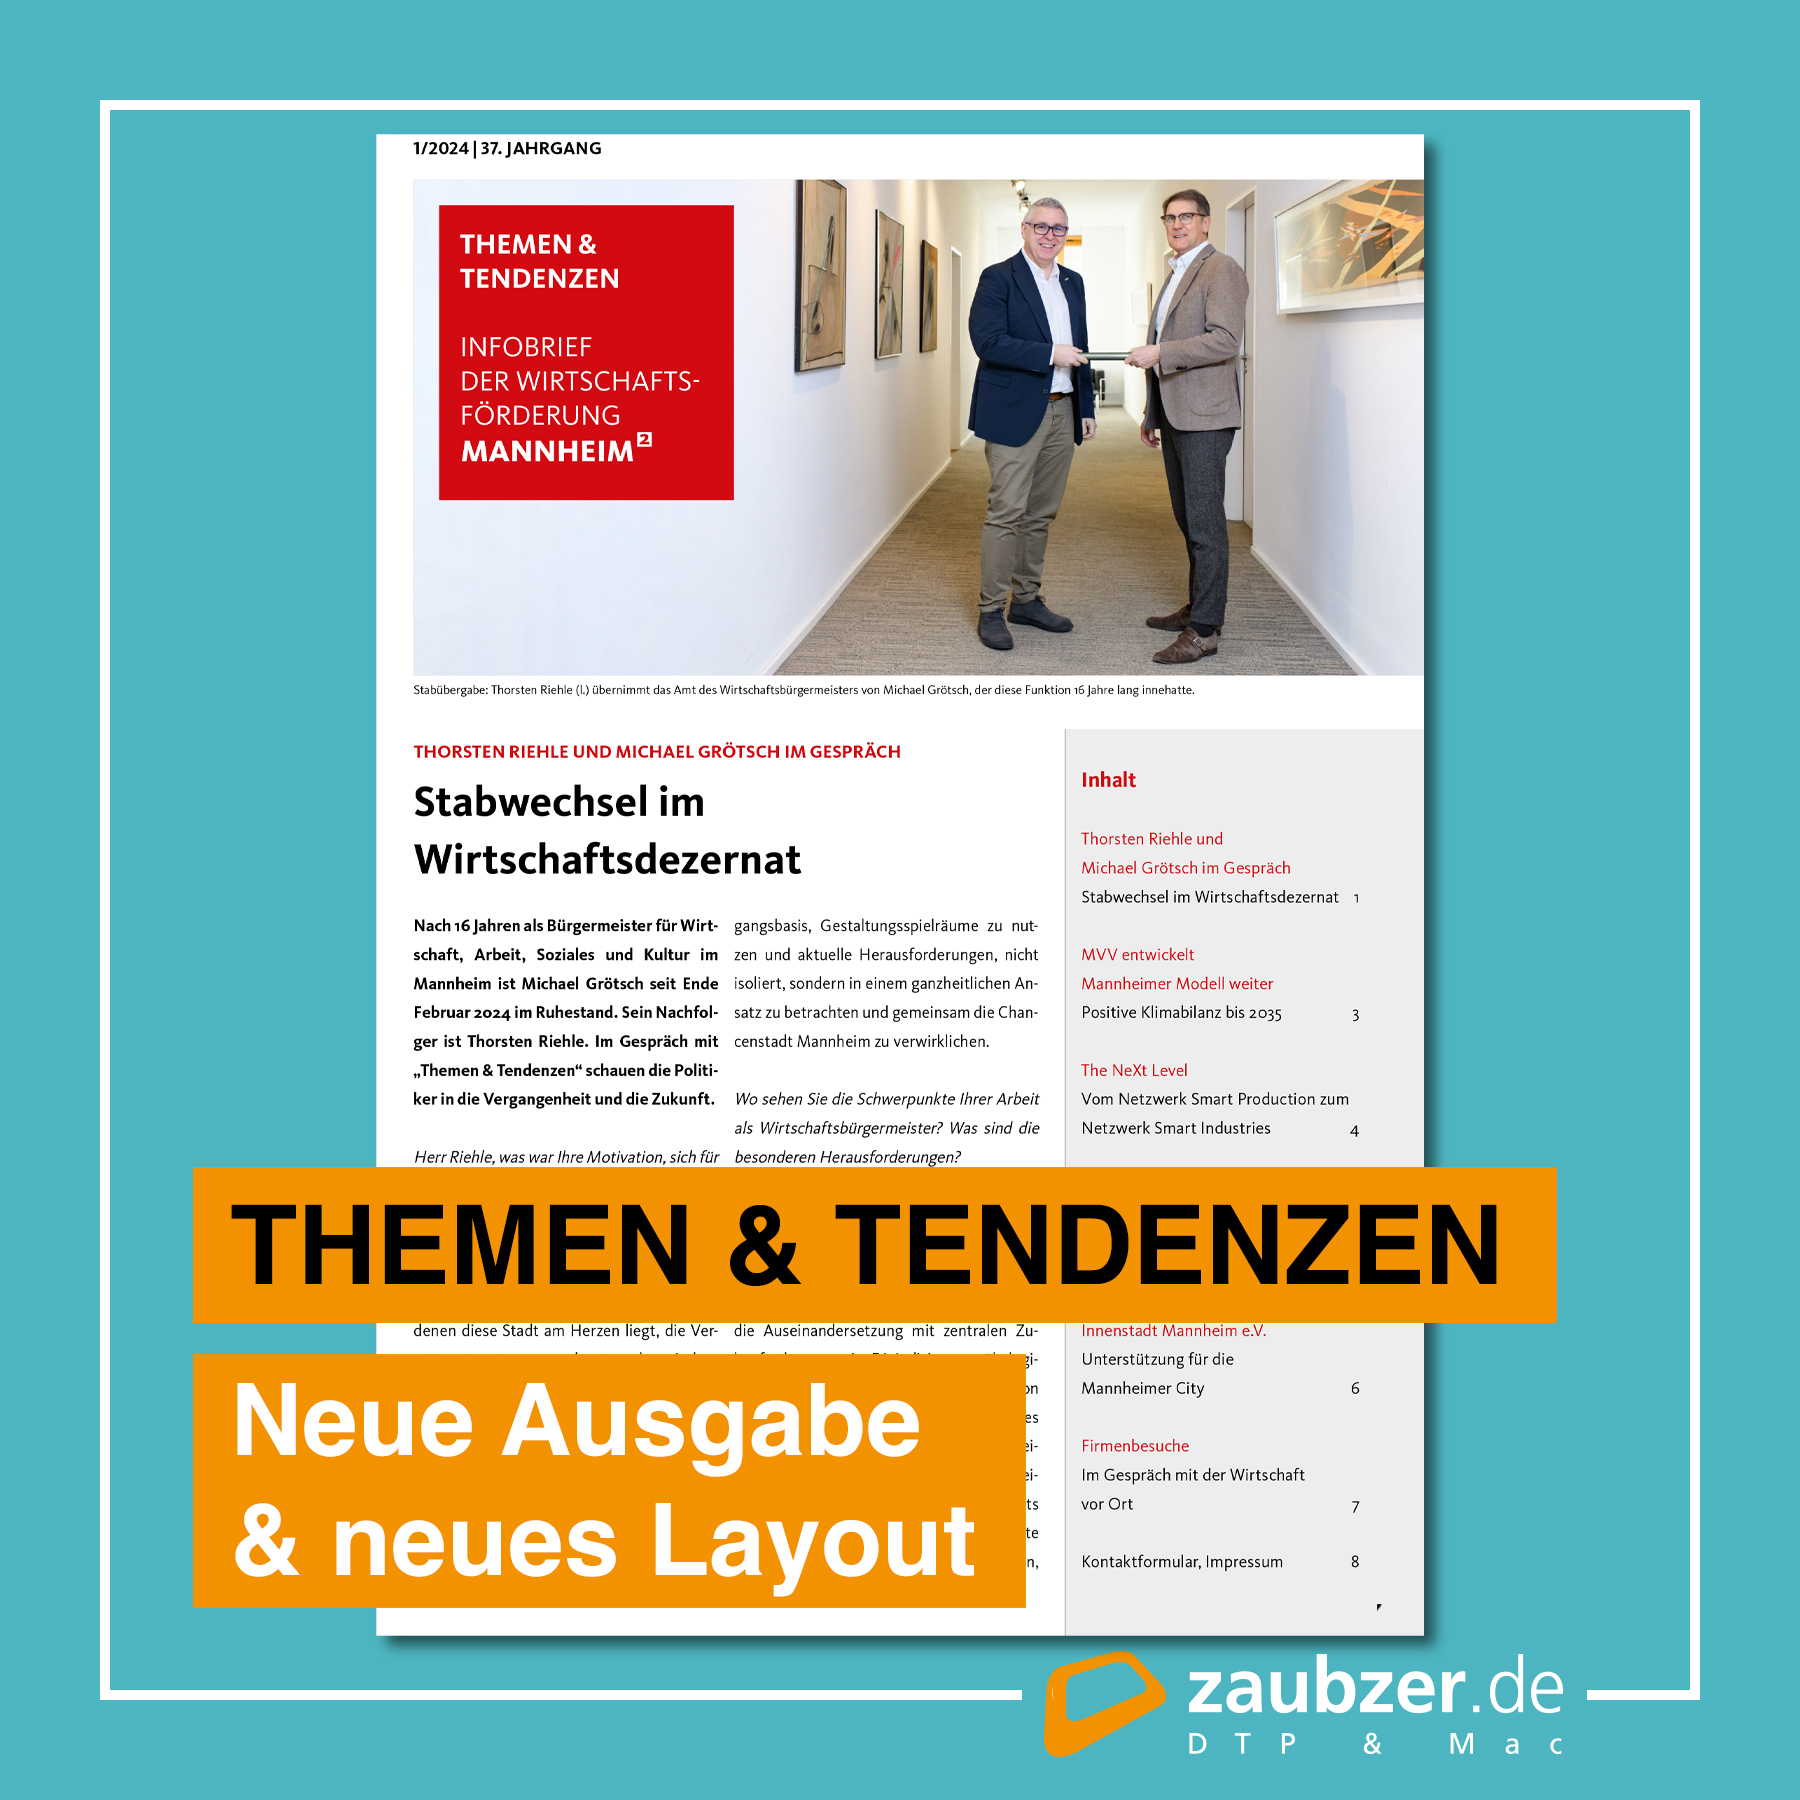 Themen und Tendenzen, TuT - zaubzer.de